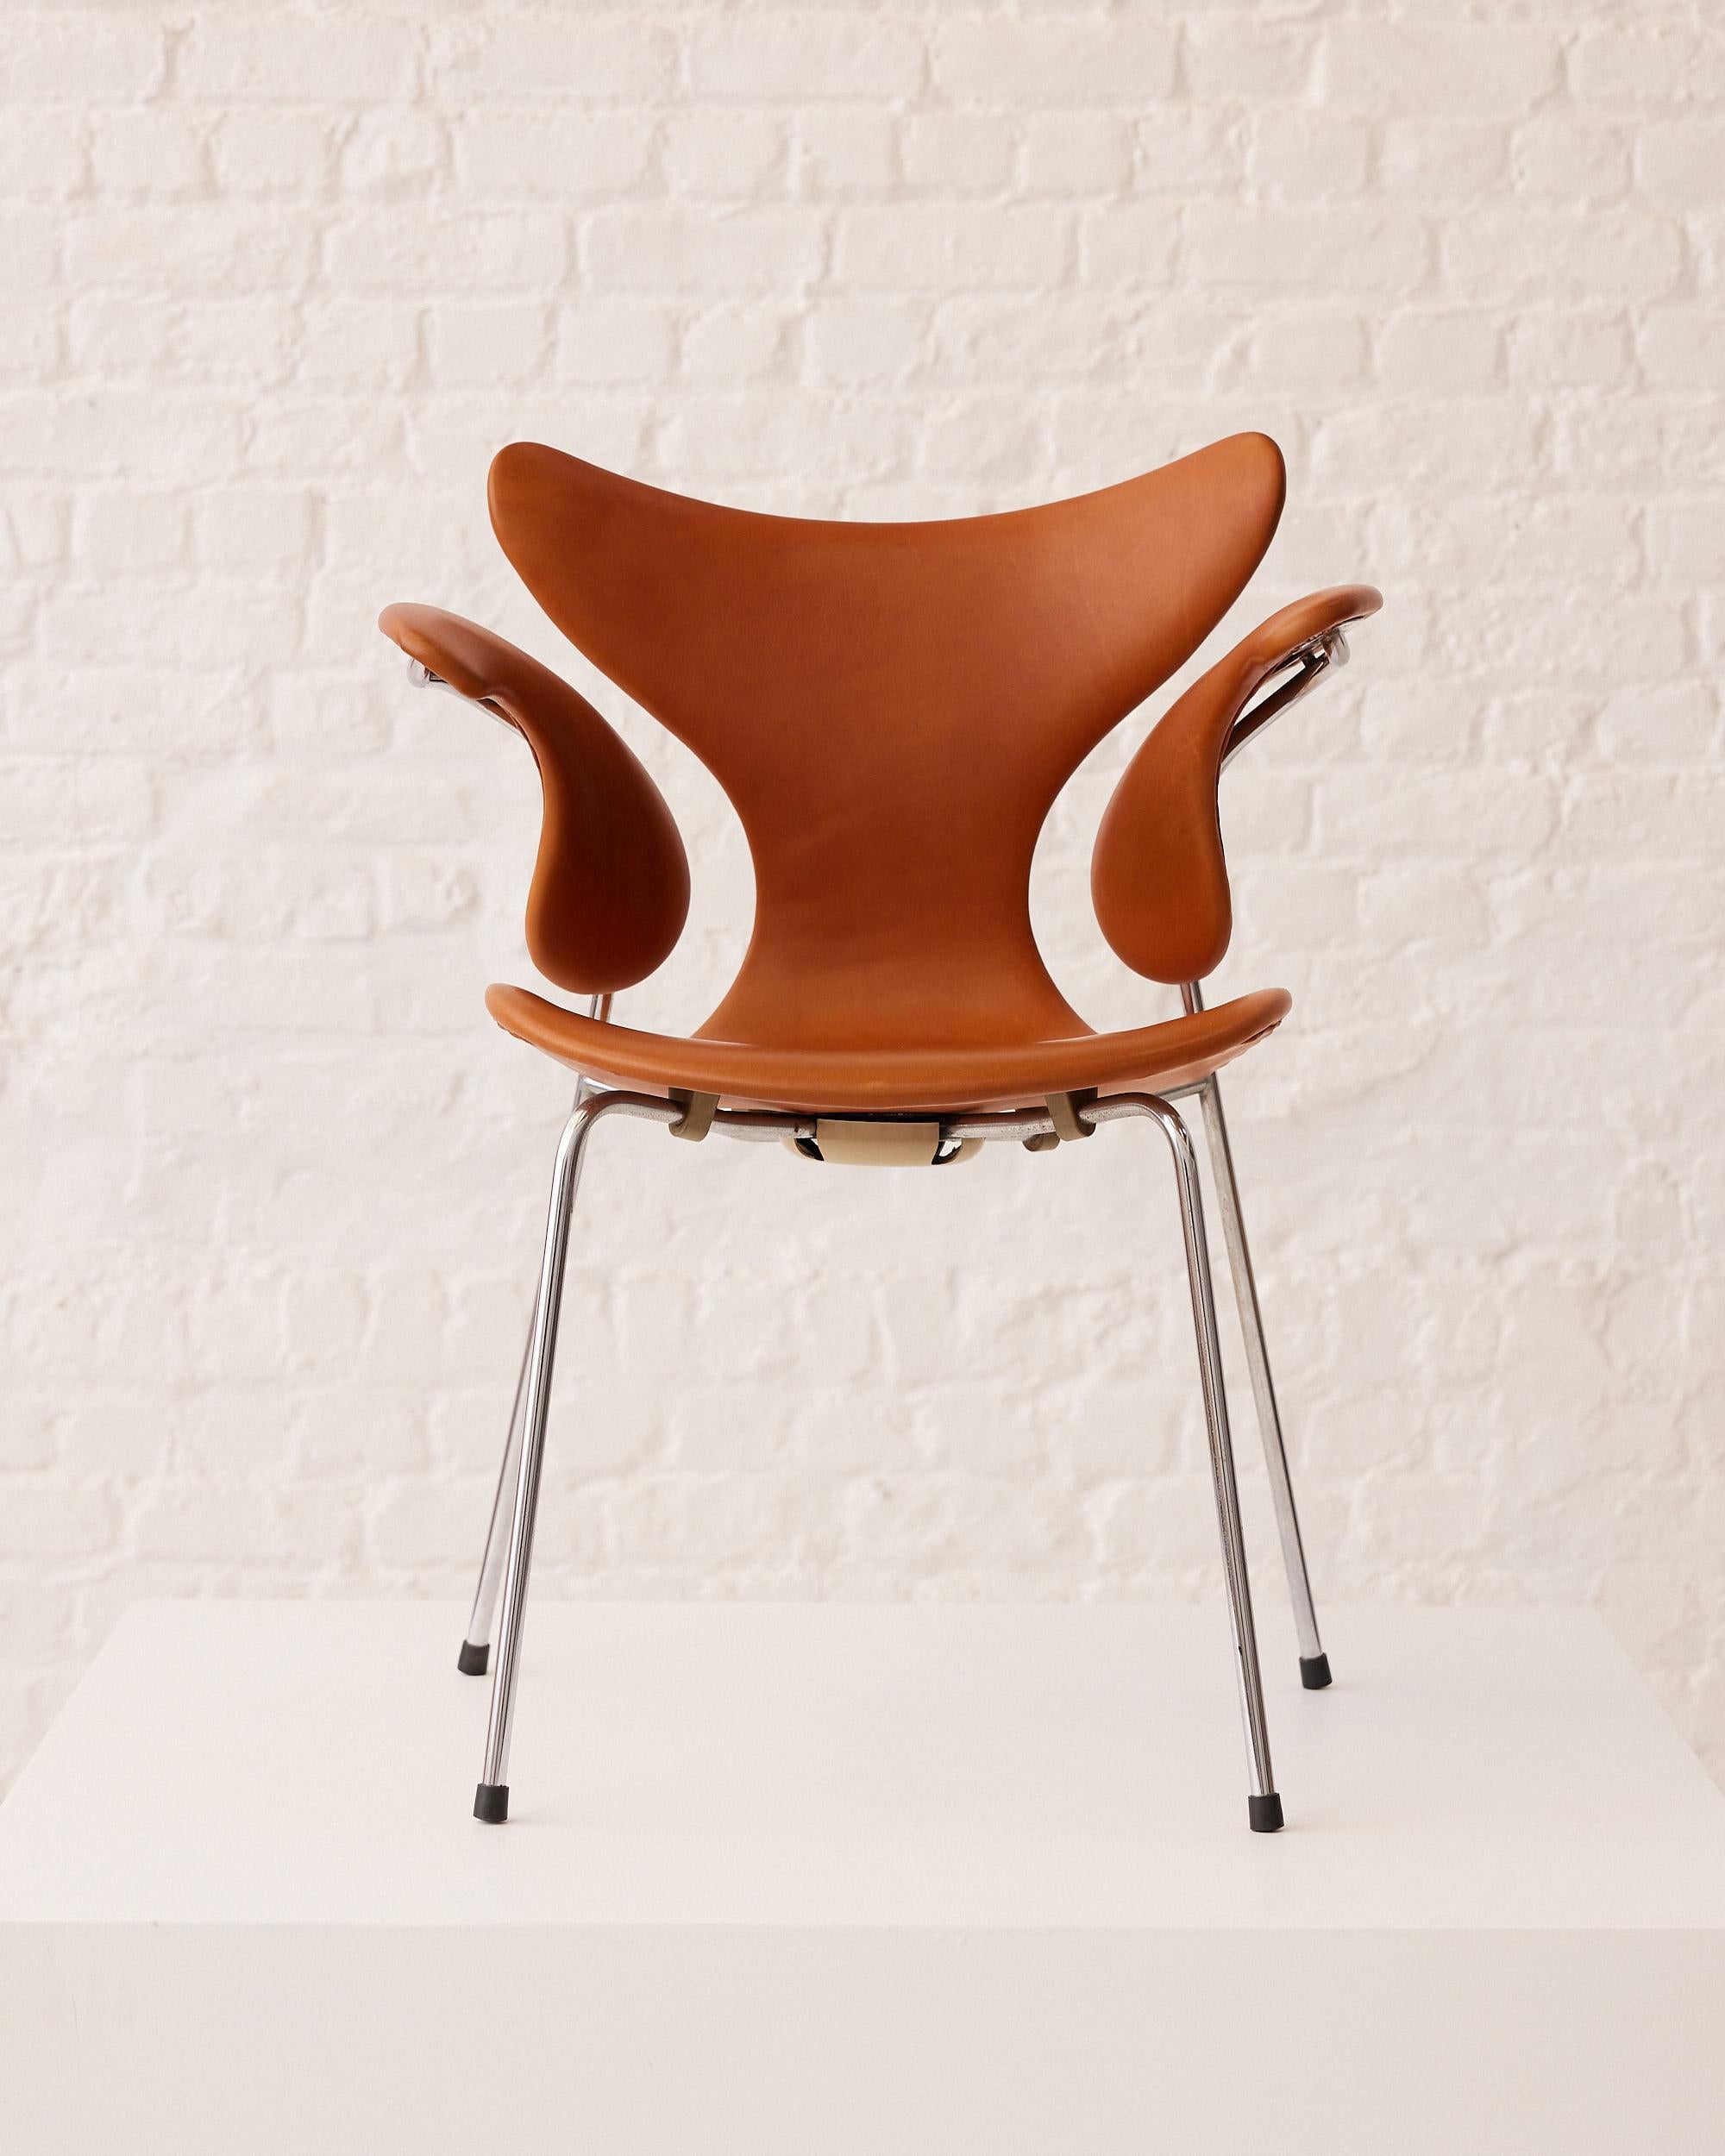 Seltener originaler Sessel von Arne Jacobsen, genannt und bekannt als 